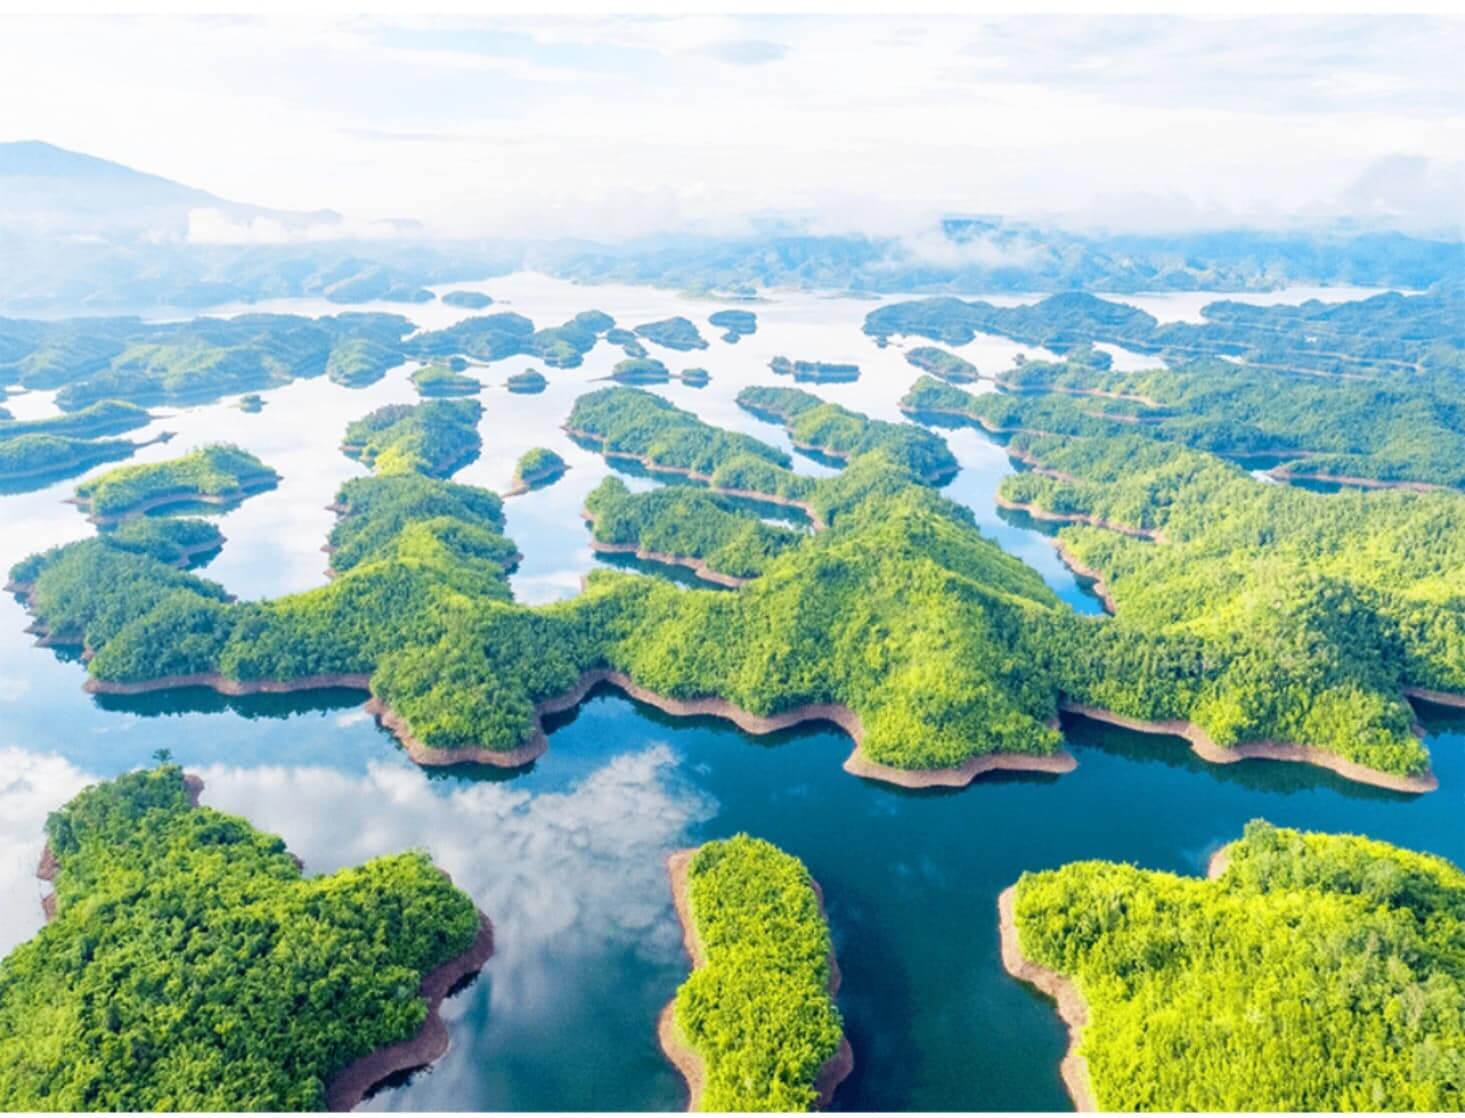 Phong cảnh thiên nhiên hồ Tà Đùng với nhiều đảo nhỏ được ví như Hạ Long trên cao